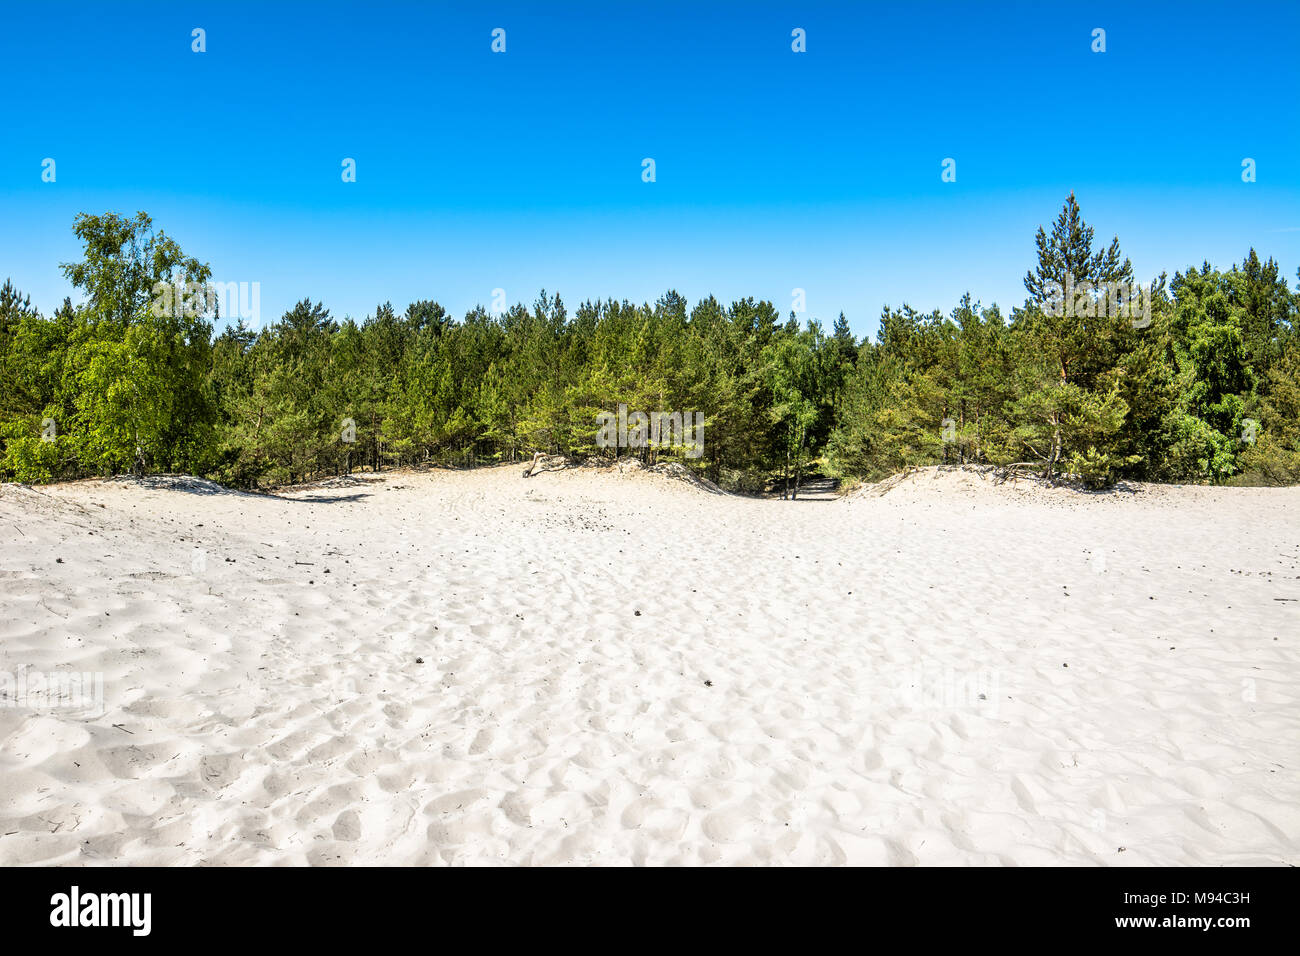 Schönen Dünen auf dem Sand Strand und Pinienwald im sommer urlaub, reise Konzept Stockfoto